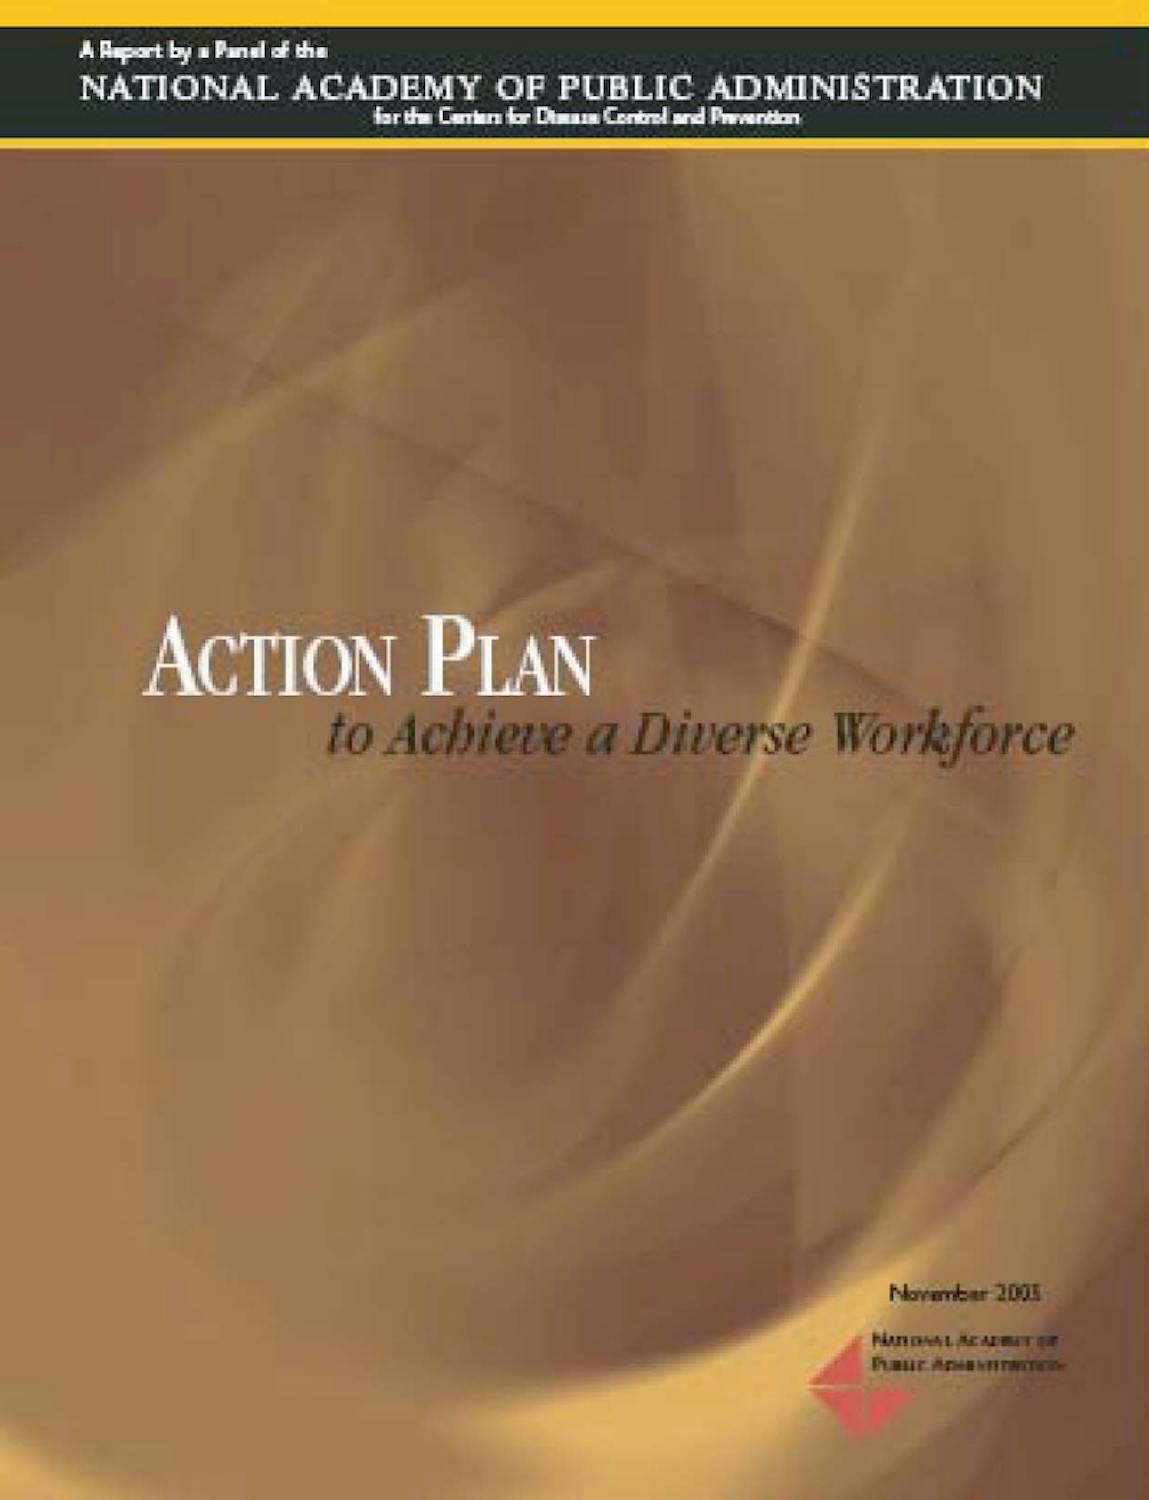 05 Action Plan Achieve Diverse Workforce